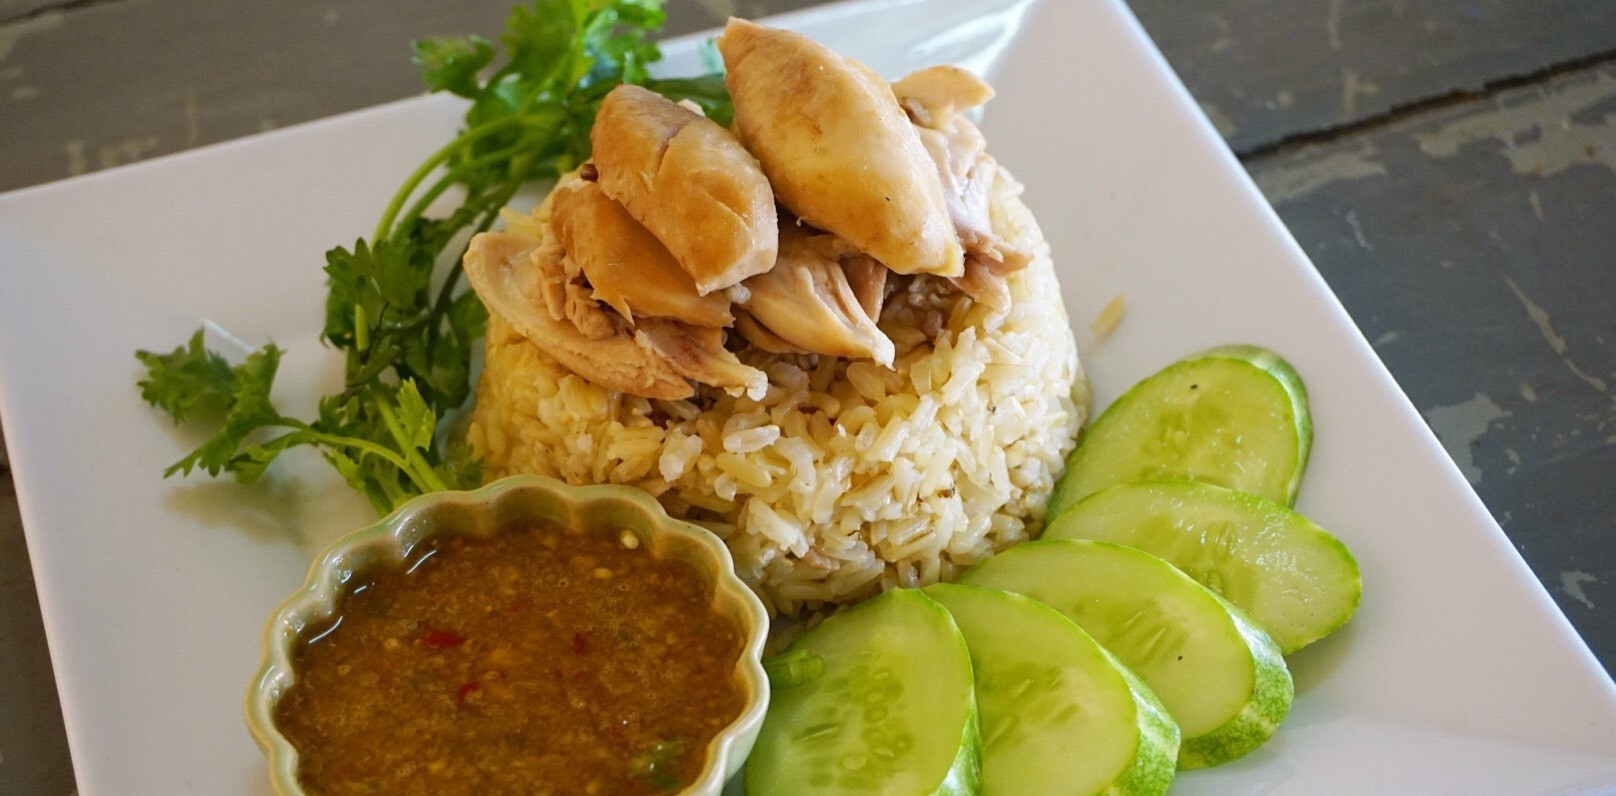 สูตร เมนู “ข้าวมันไก่” เมนูอาหารคลีน ทำง่ายด้วยหม้อหุงข้าว!